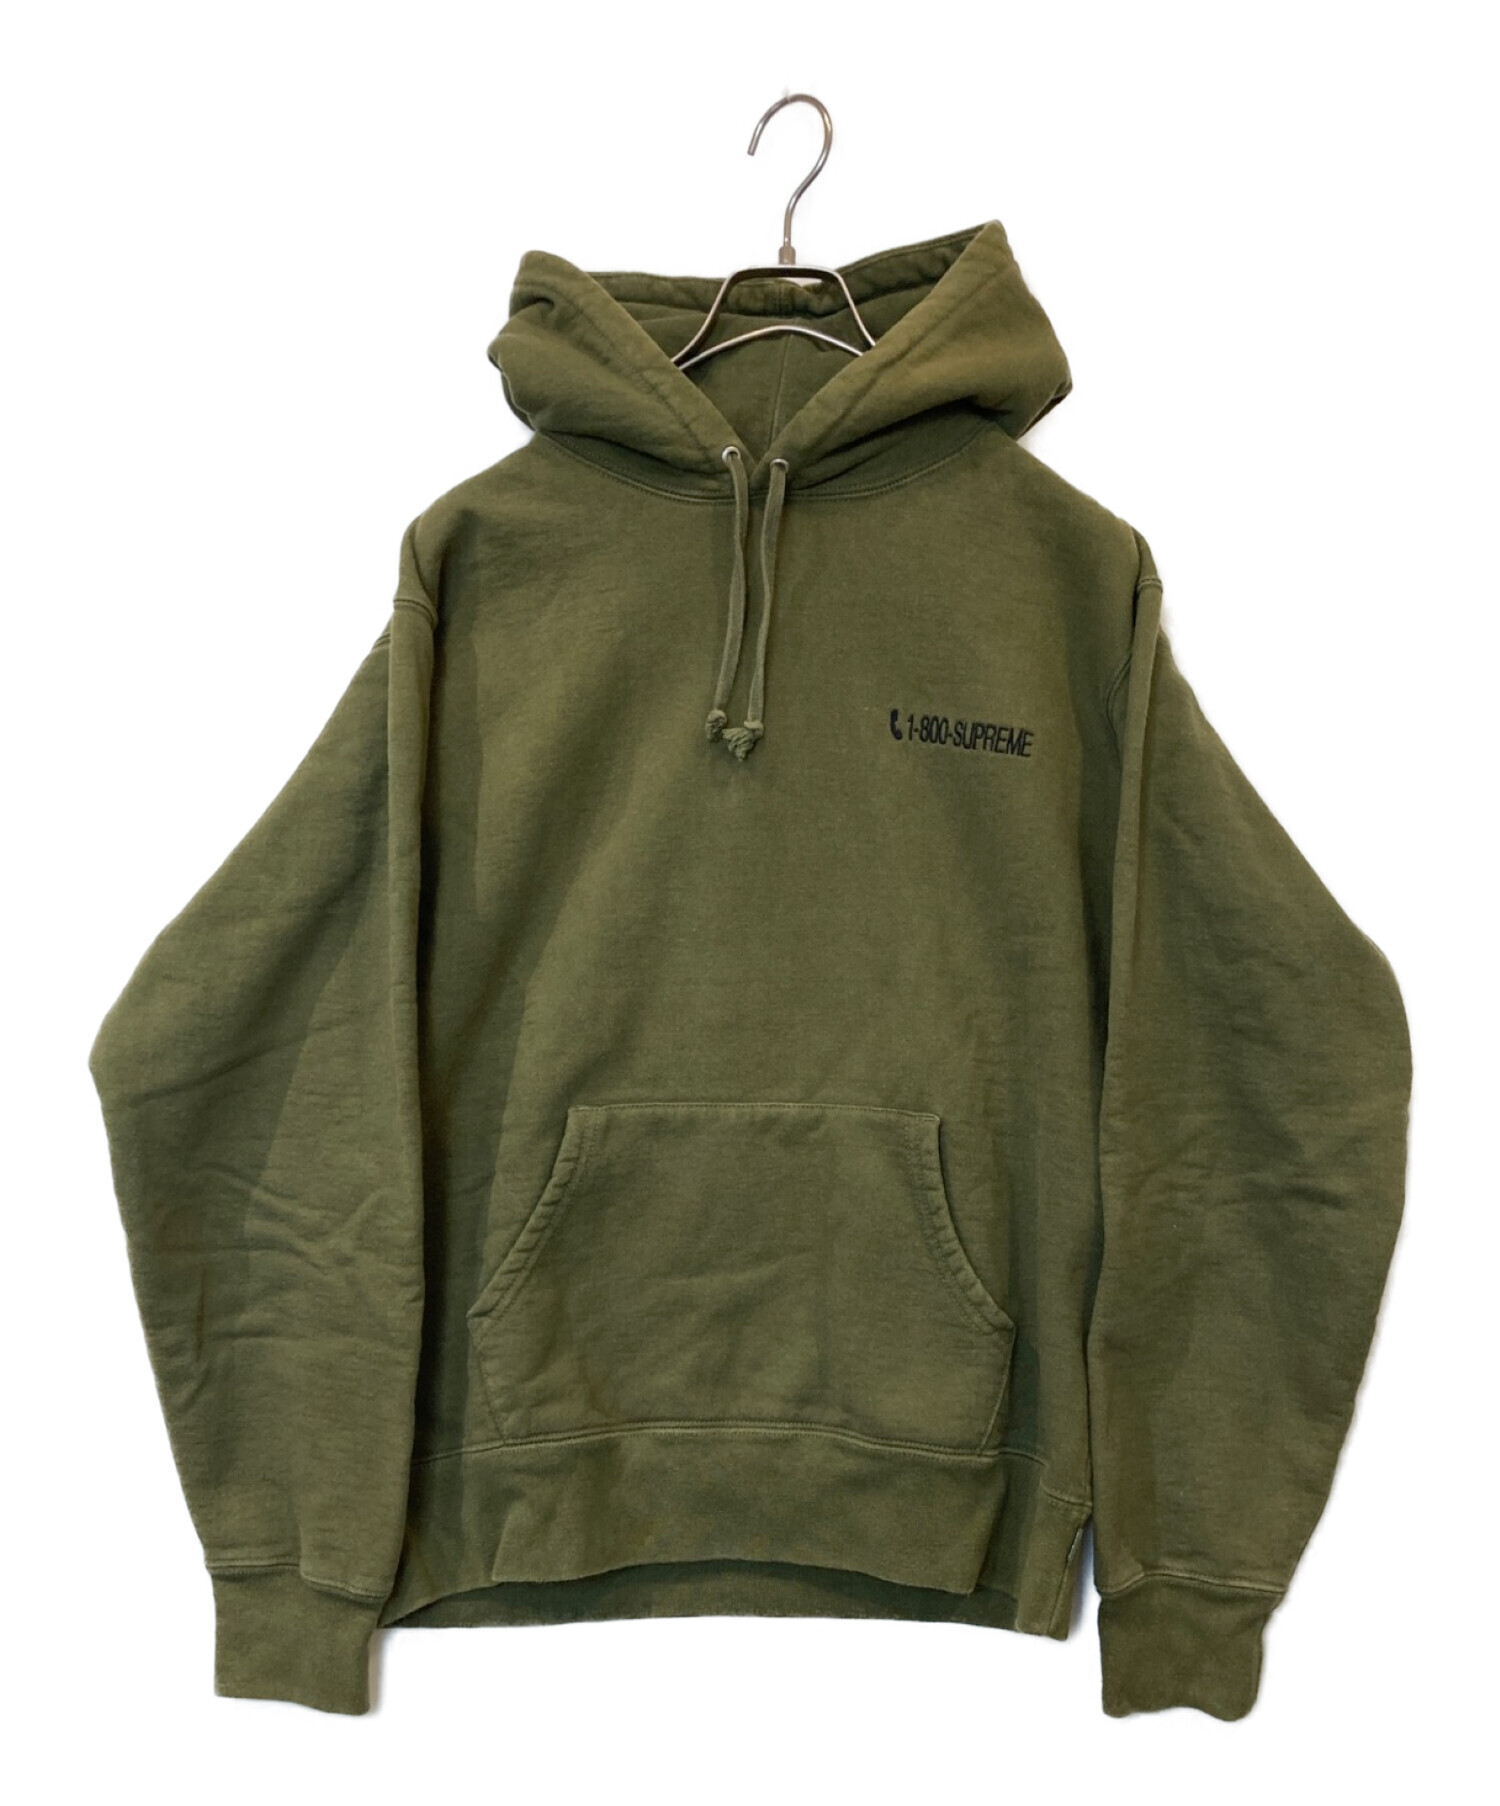 Supreme 1 - 800 Hooded Sweatshirt